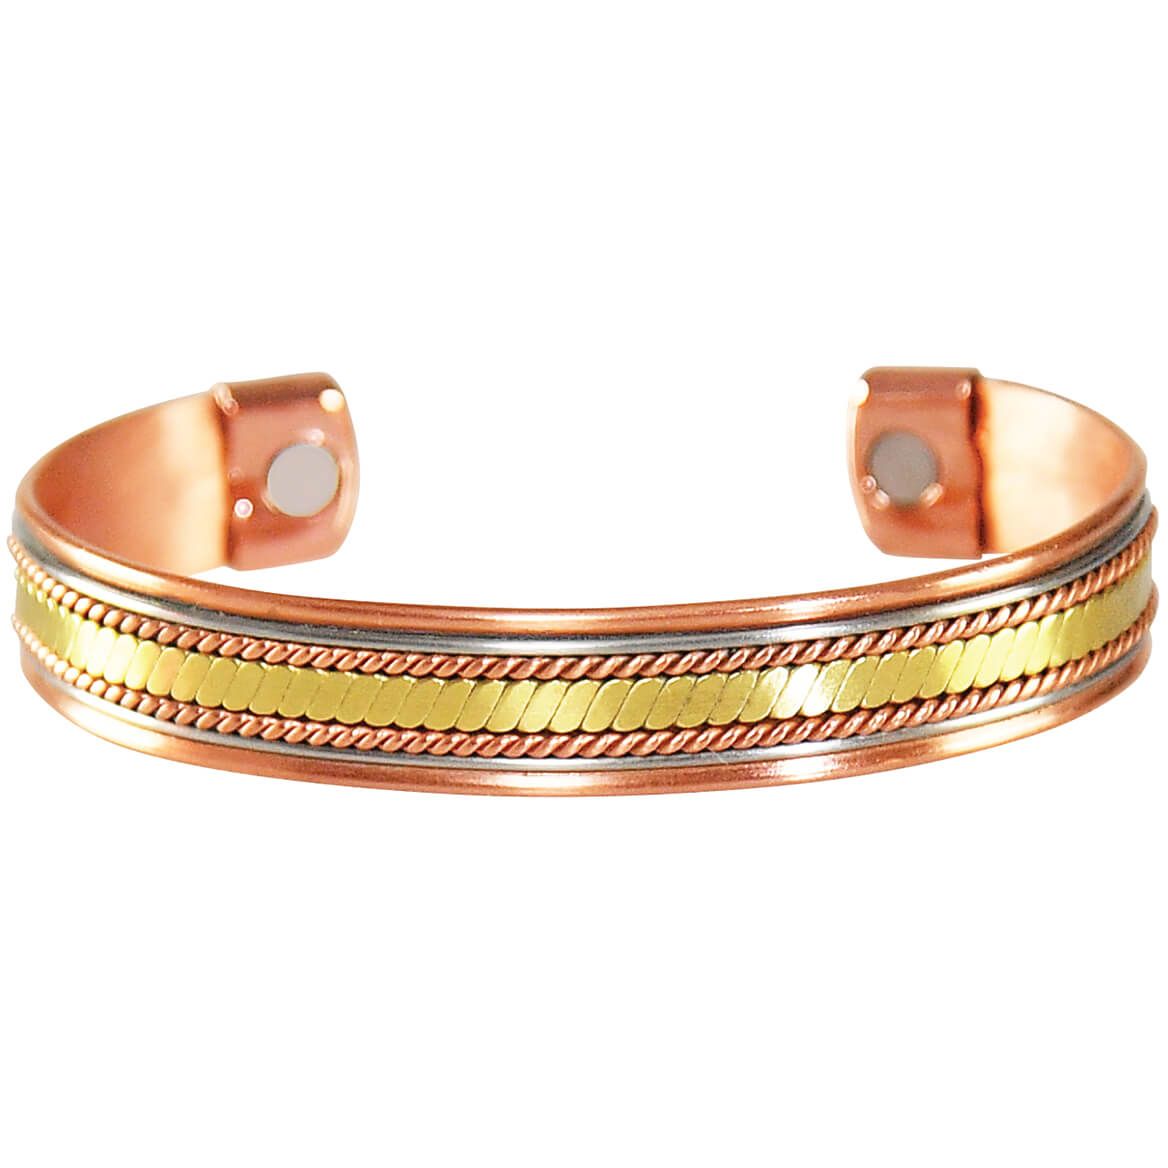 Copper Magnetic Bracelet Single Twist + '-' + 375178